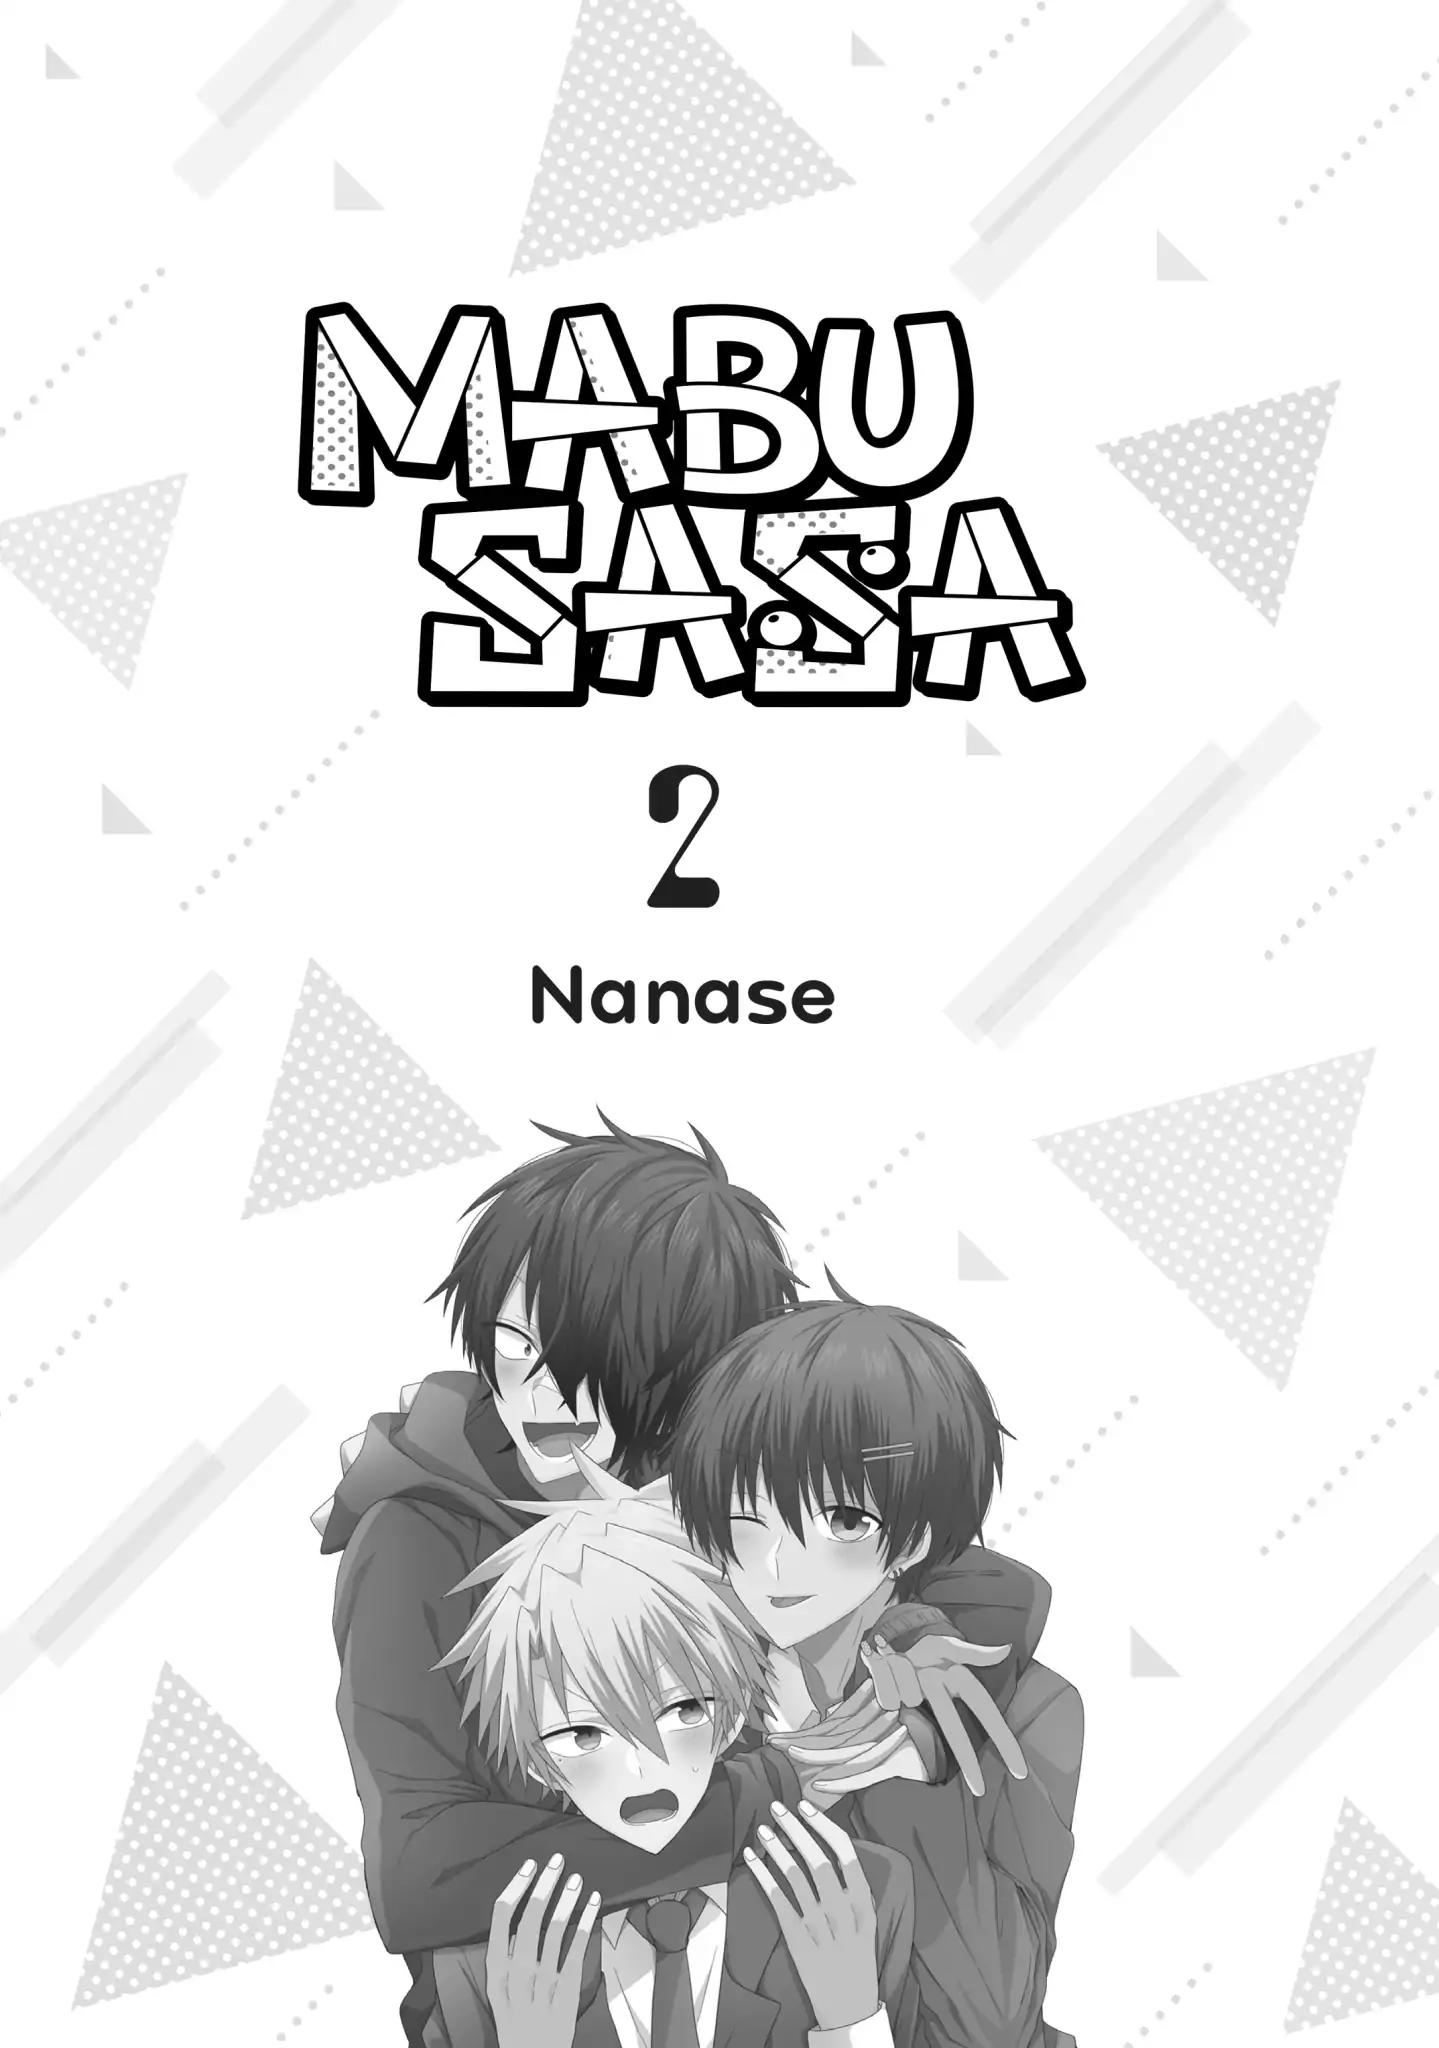 MabuSasa Vol.2 Chapter 7: